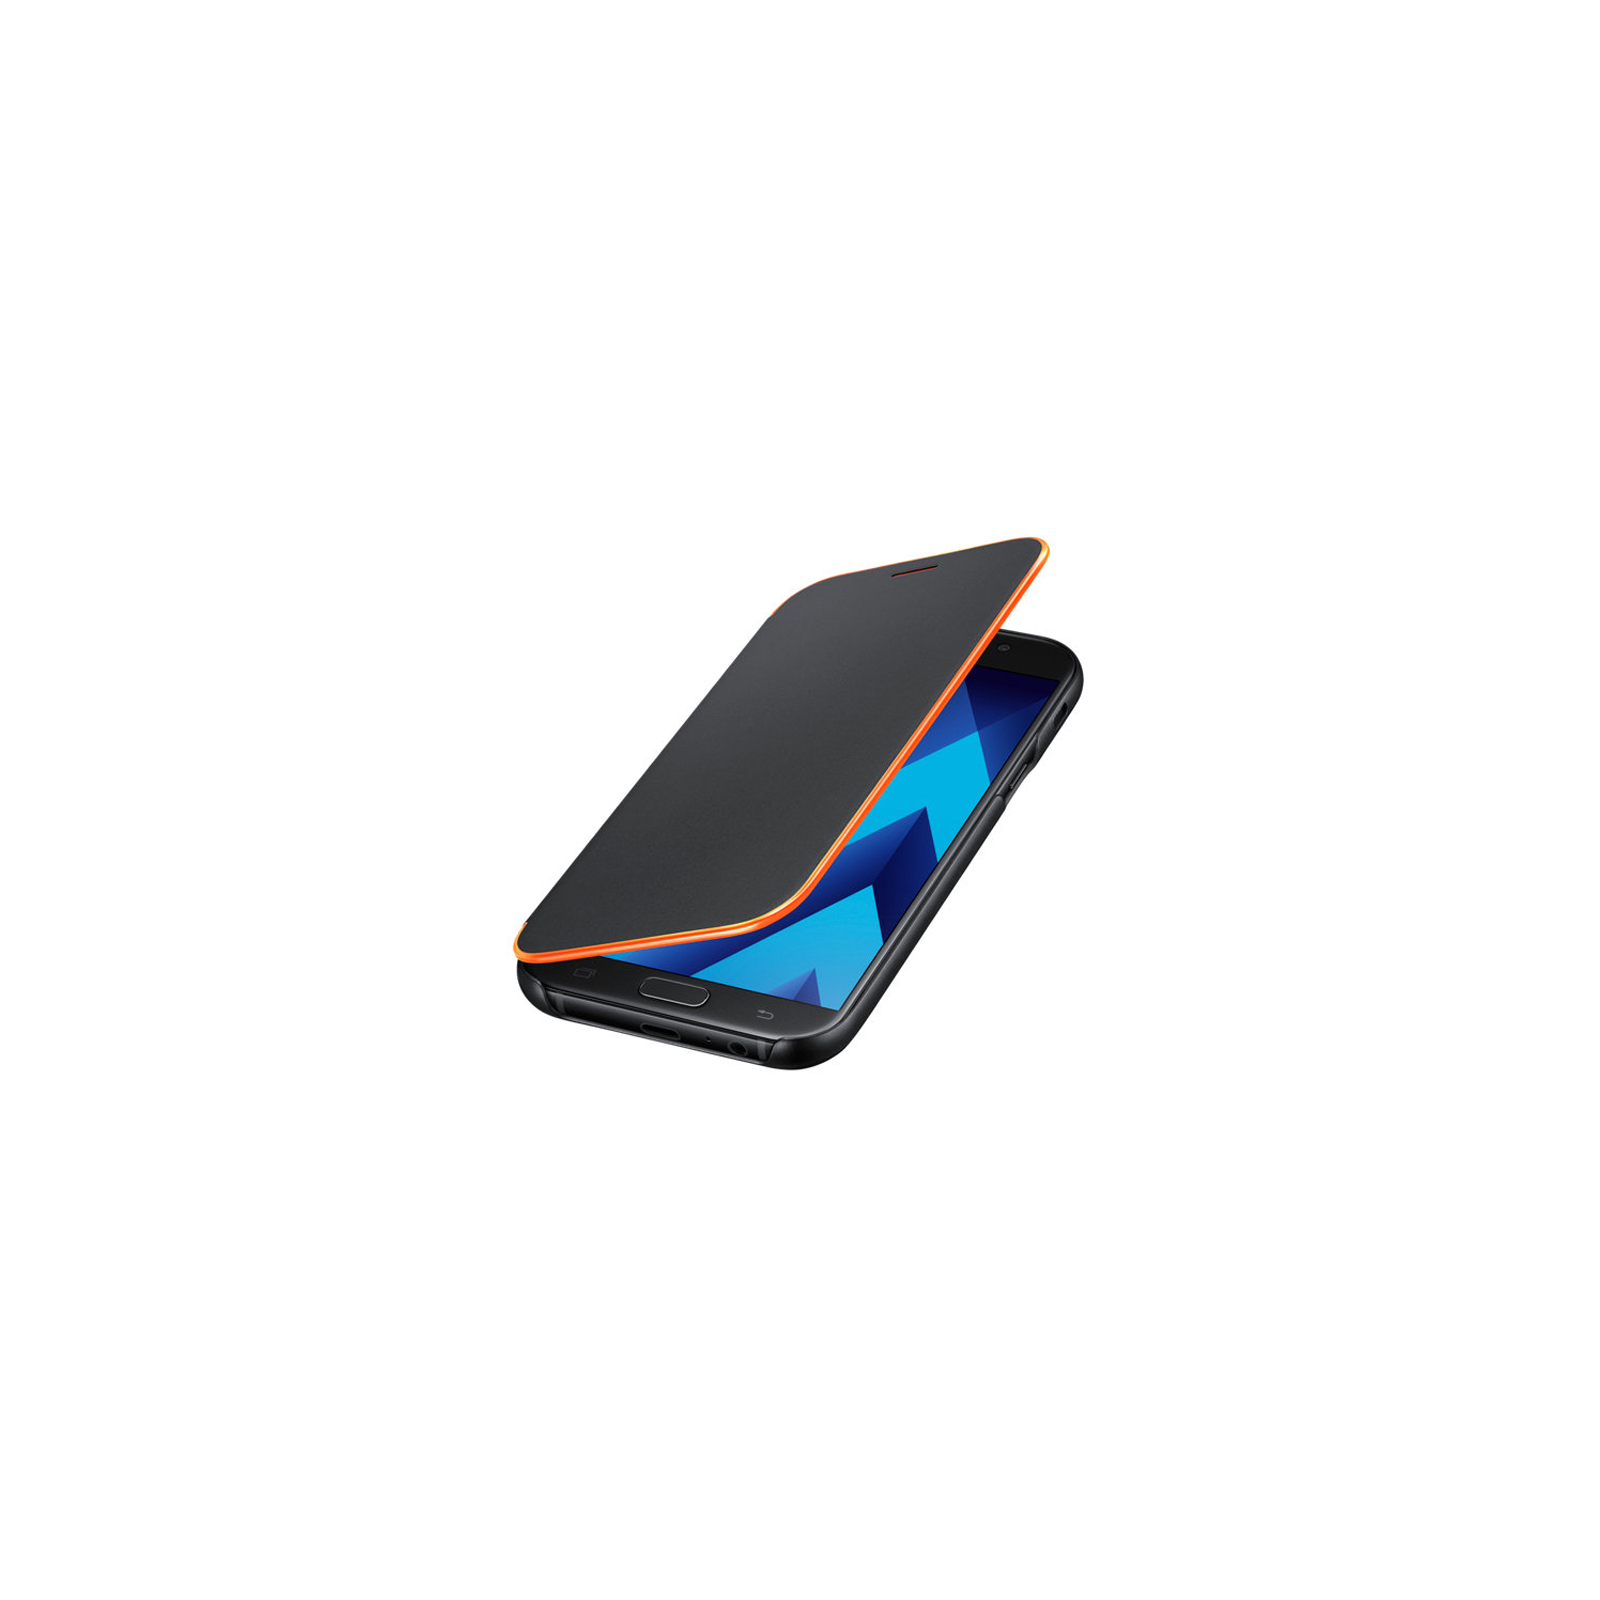 Чехол для мобильного телефона Samsung для A320 - Neon Flip Cover (Black) (EF-FA320PBEGRU) изображение 3